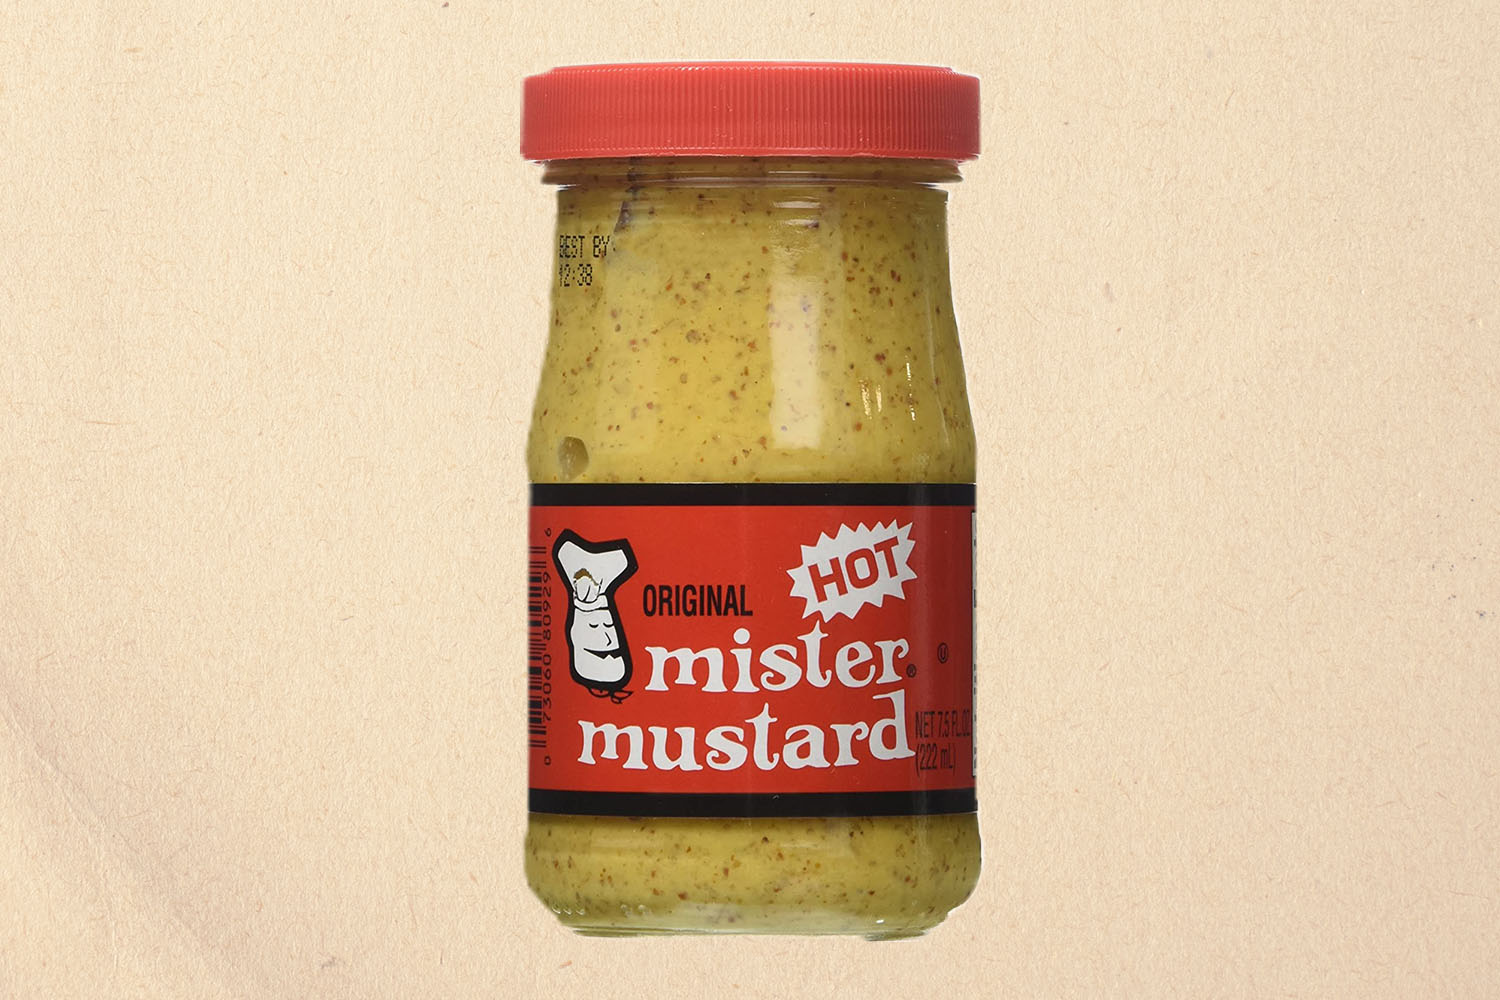 Mister Mustard original hot mustard